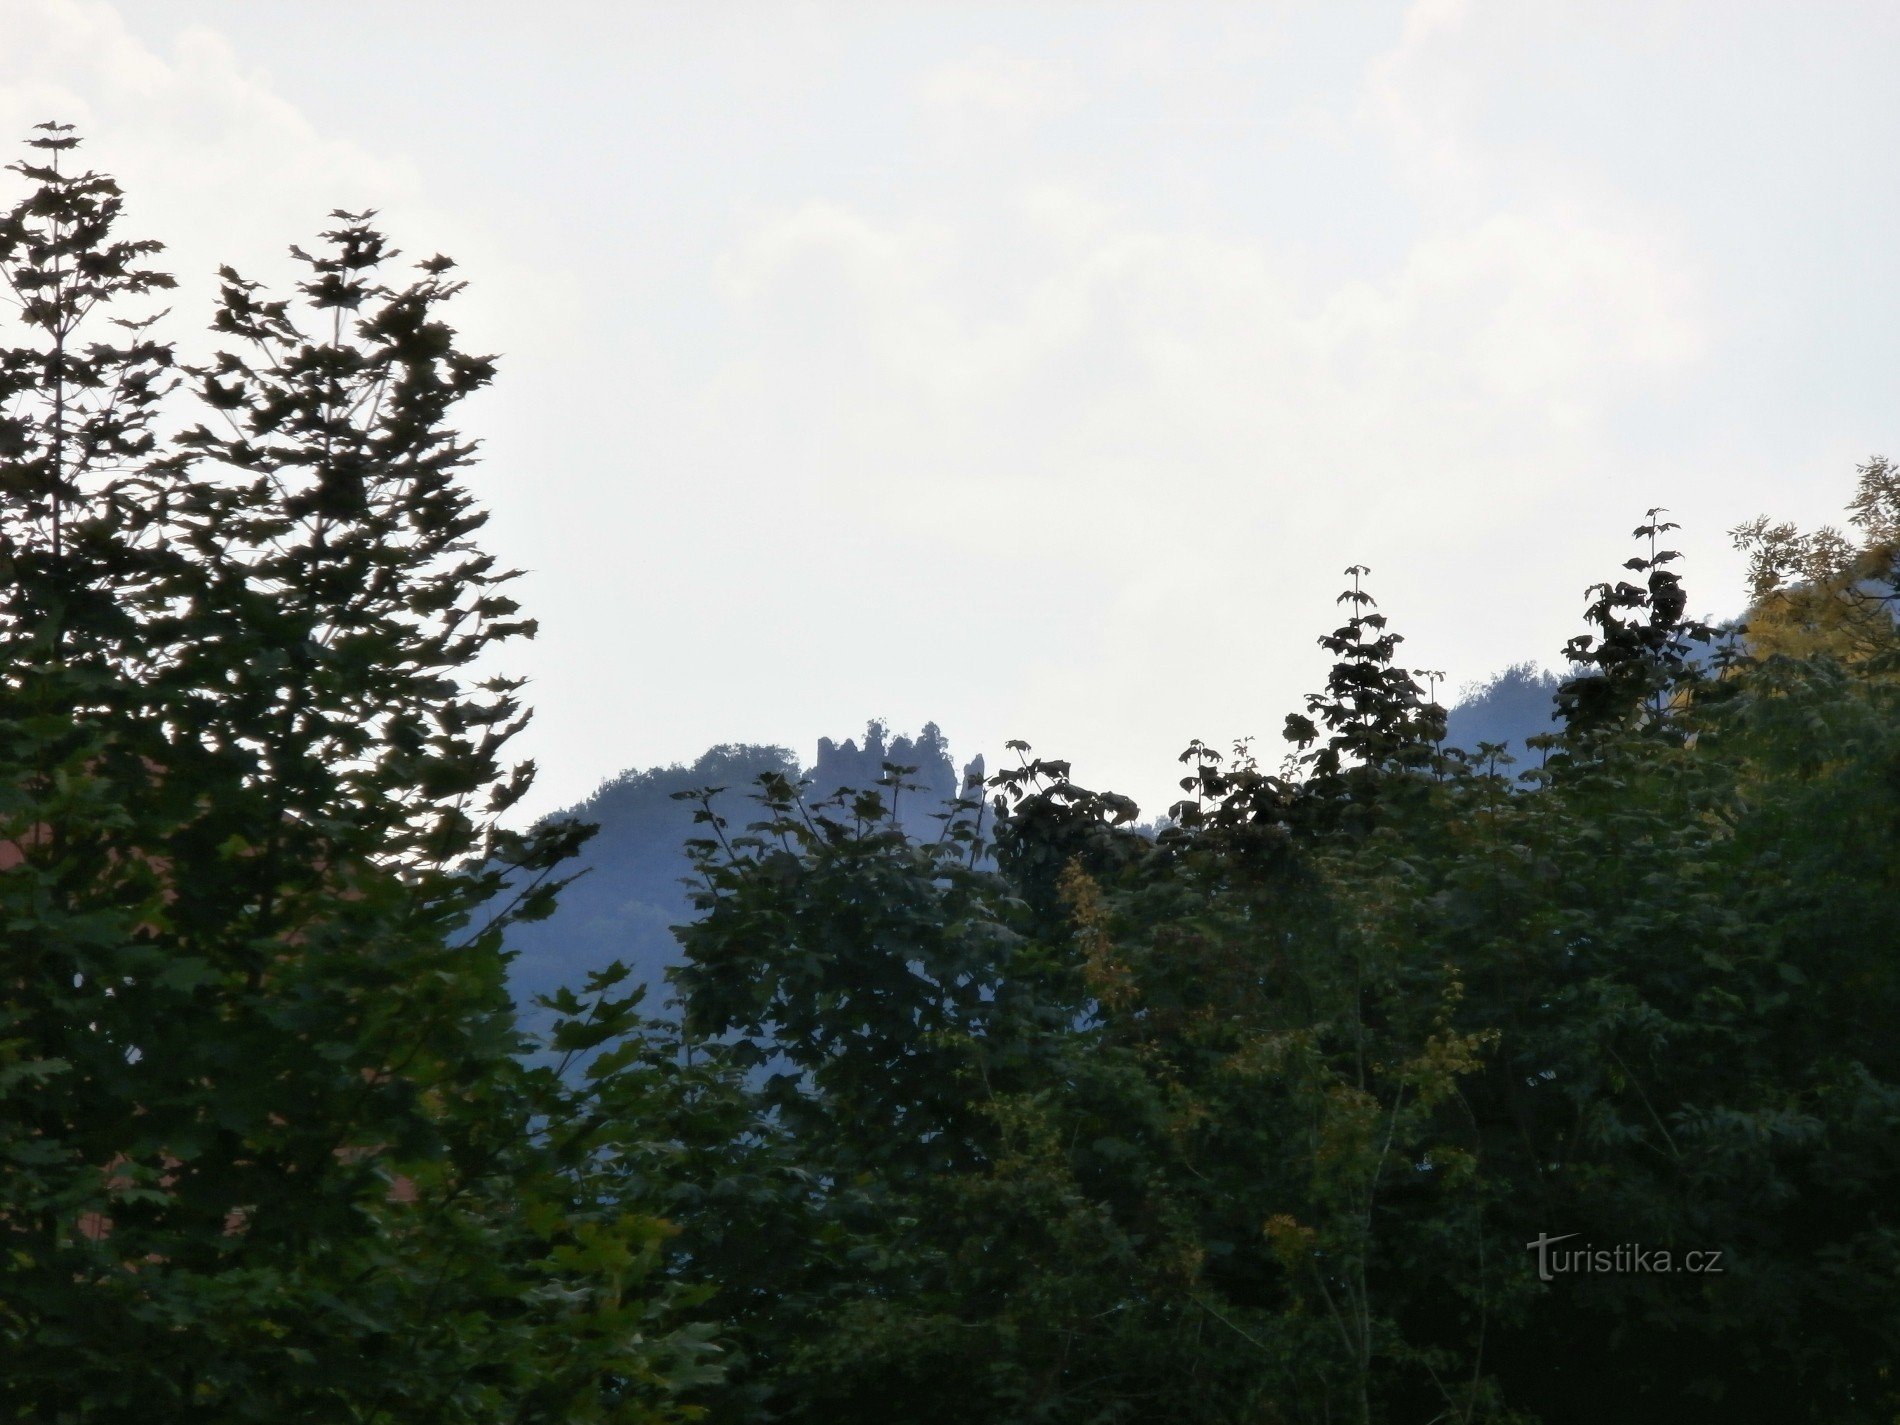 2. За залізничними коліями видніються руїни замку Егерберк